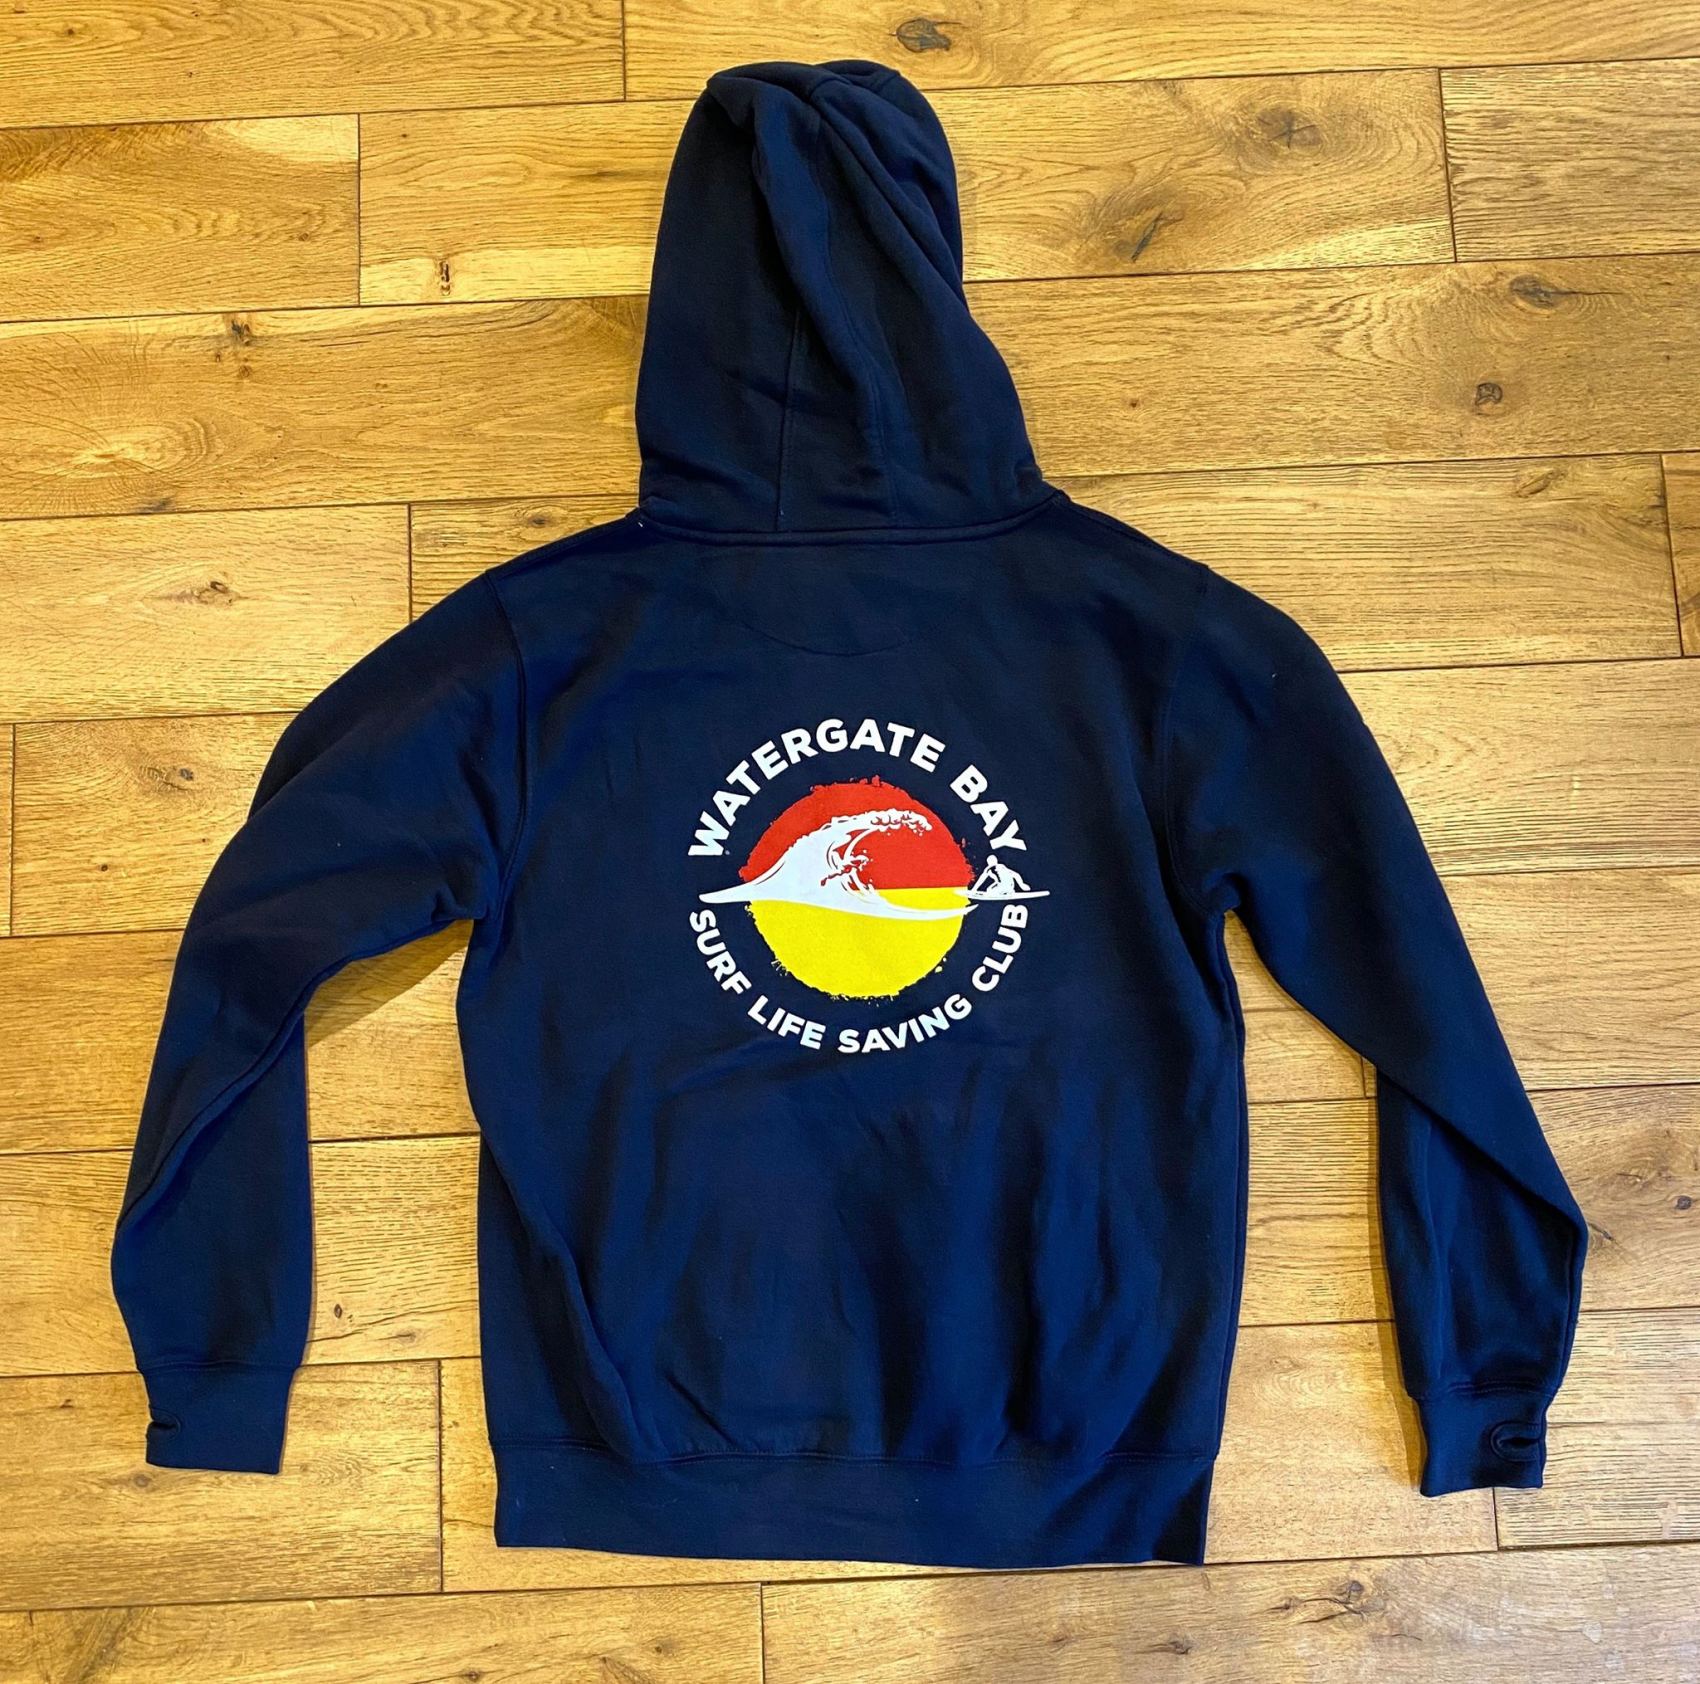 Adult Hoodie – Watergate Bay Surf Life Saving Club